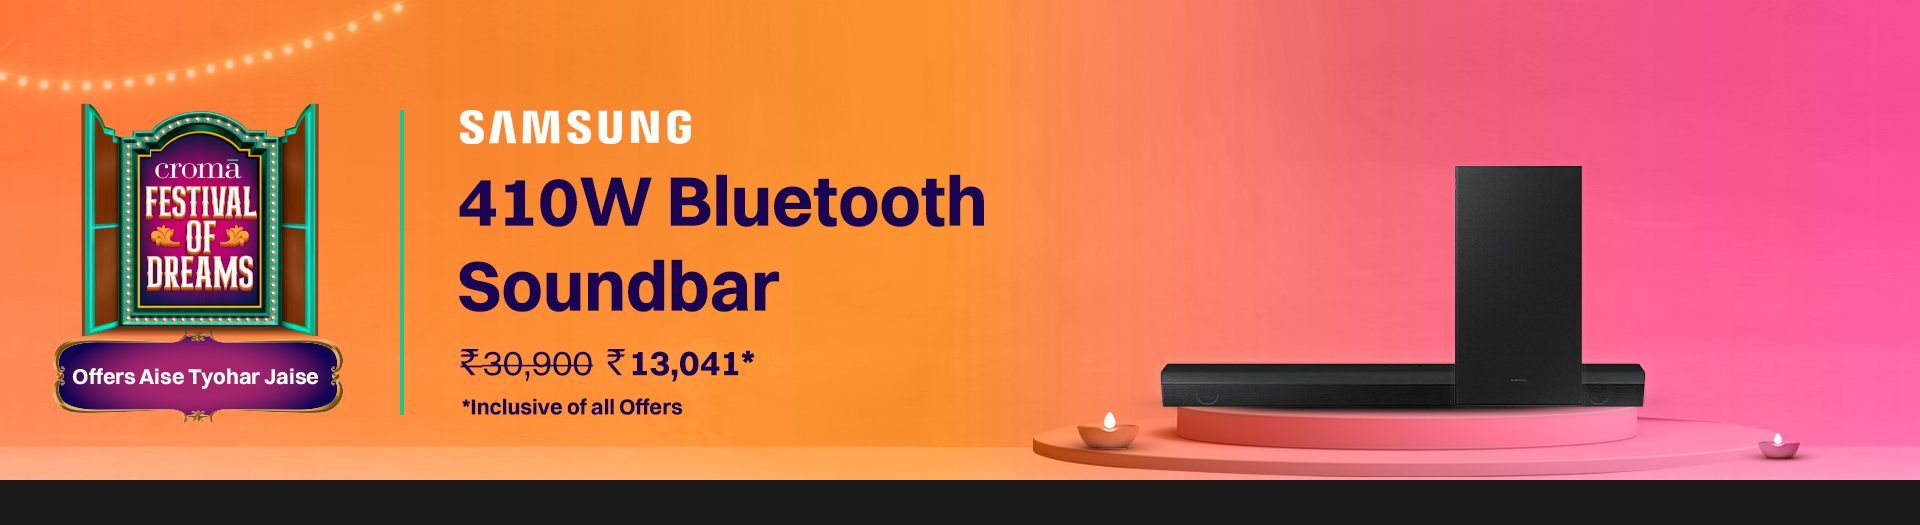 croma.com - Samsung 410W Bluetooth Soundbar